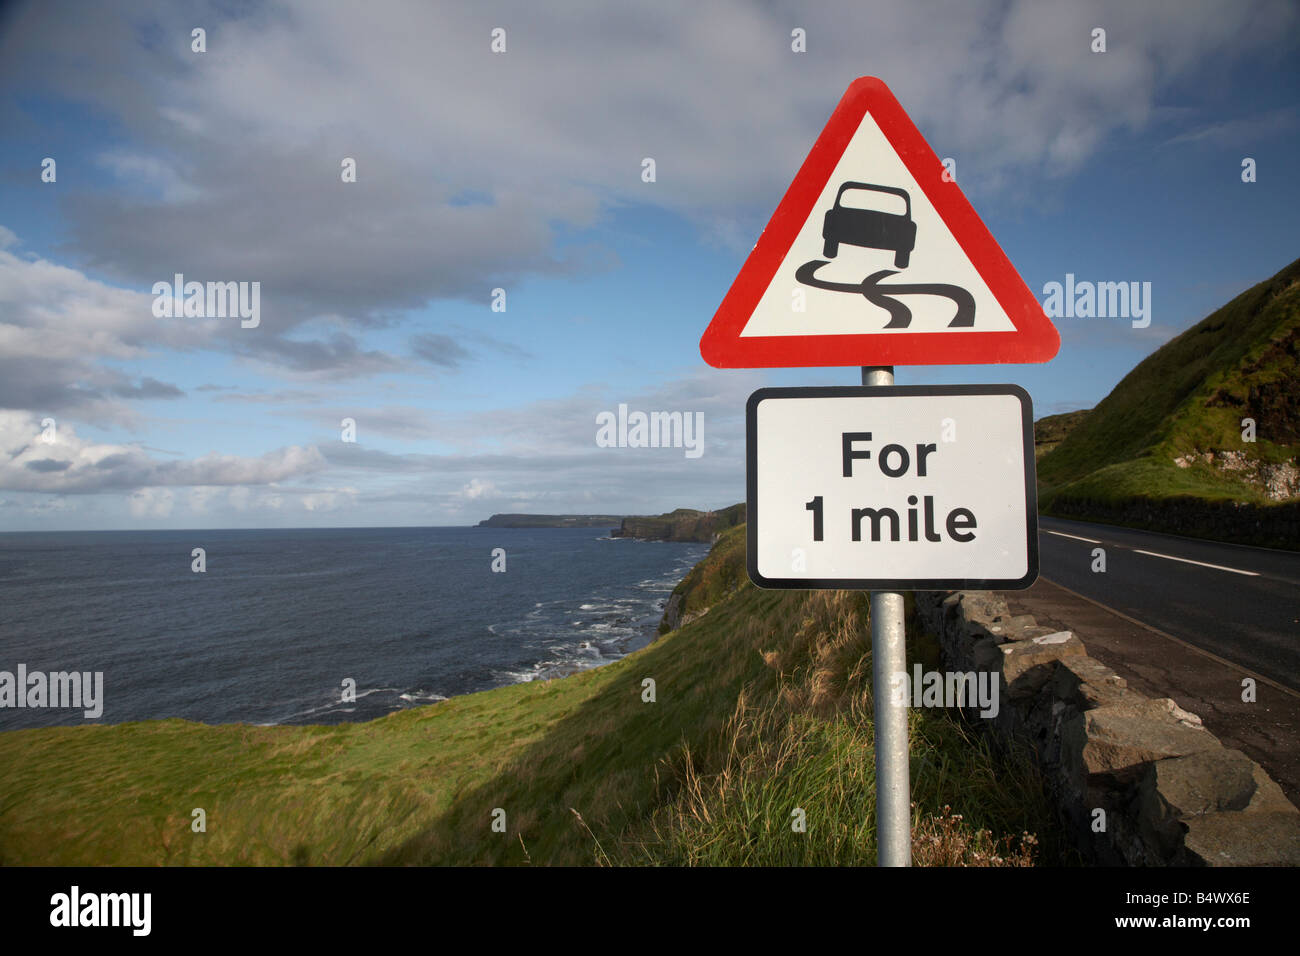 Strada sdrucciolevole pericolo rosso triangolo di avvertimento per 1 miglio segno sulla famosa A2 North Antrim causeway Coastal road route Foto Stock